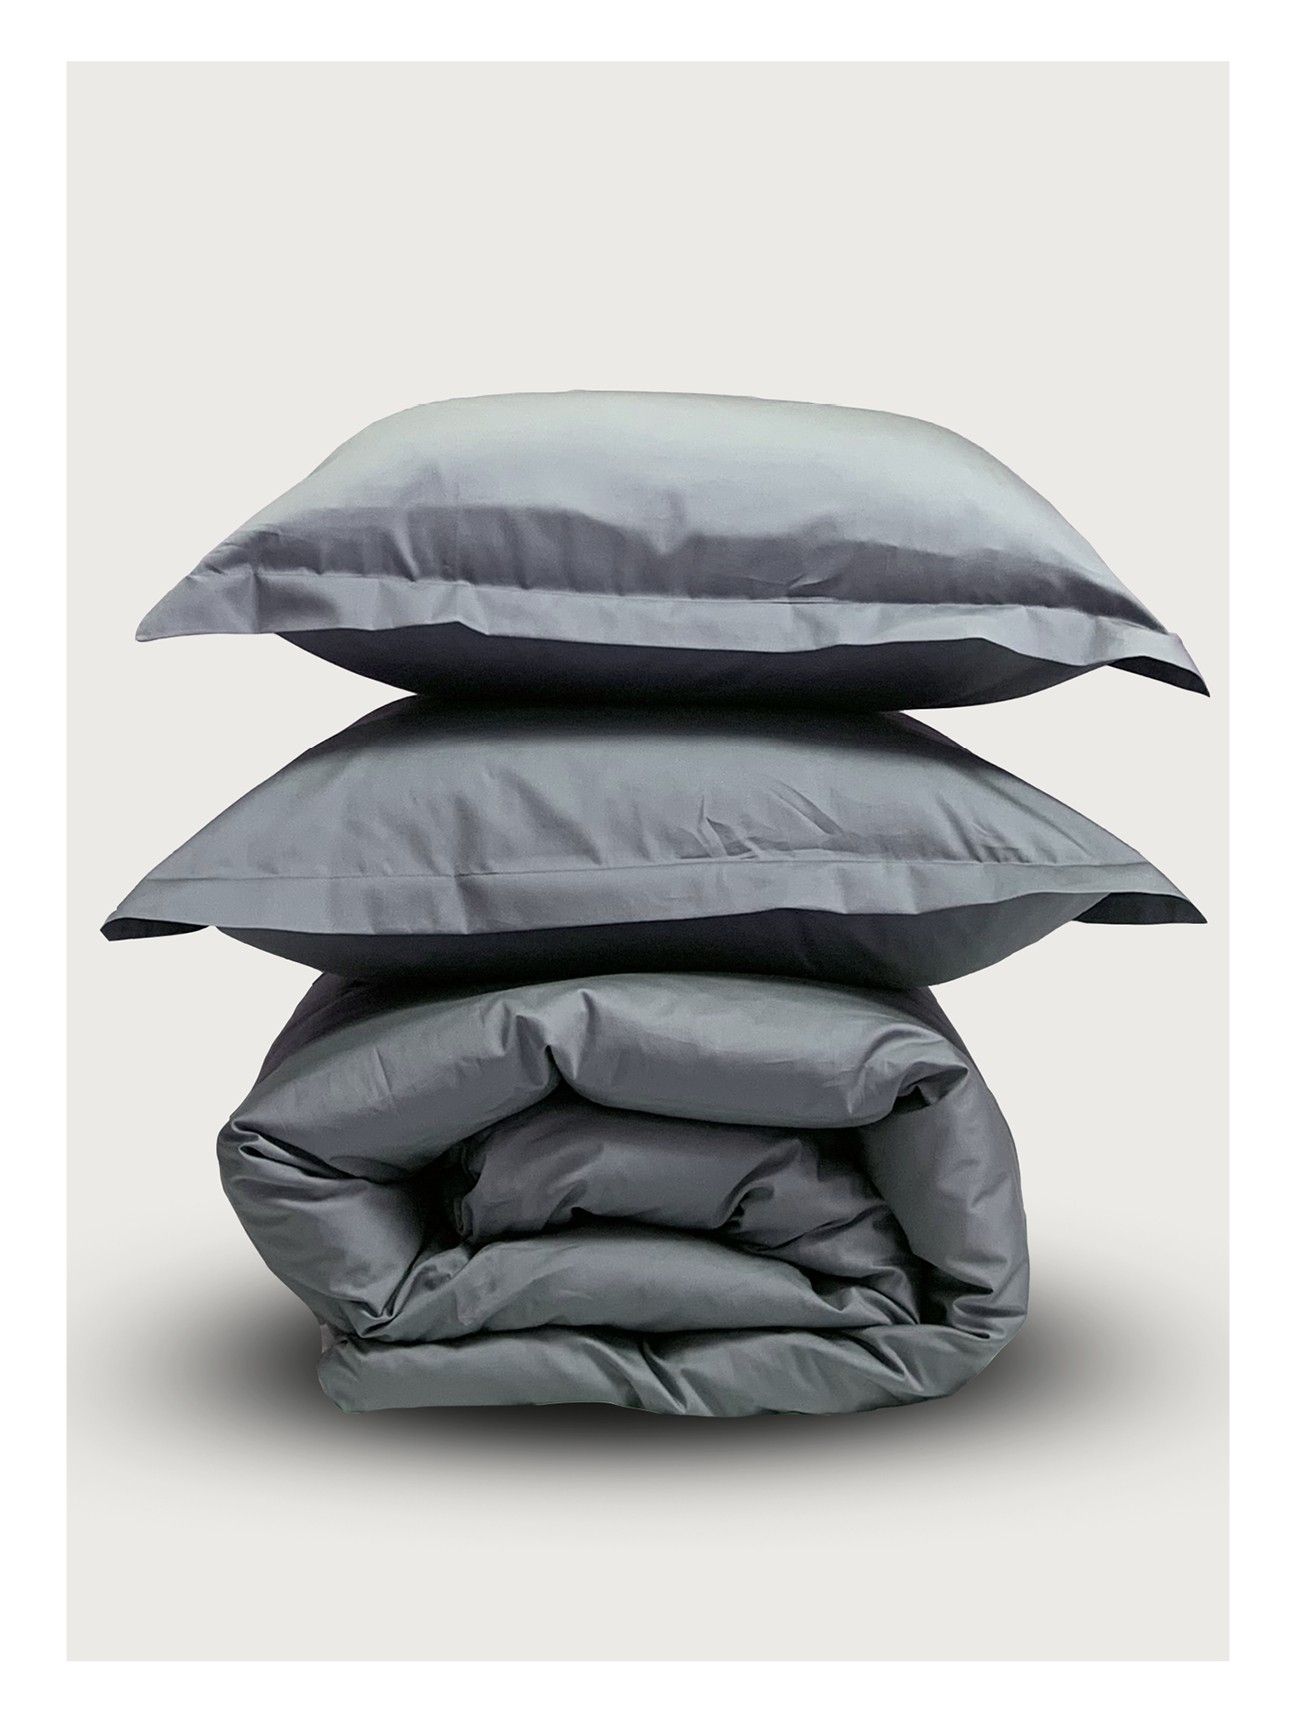 Комплект постельного белья Евро комплект Minimalism Satin Dark grey